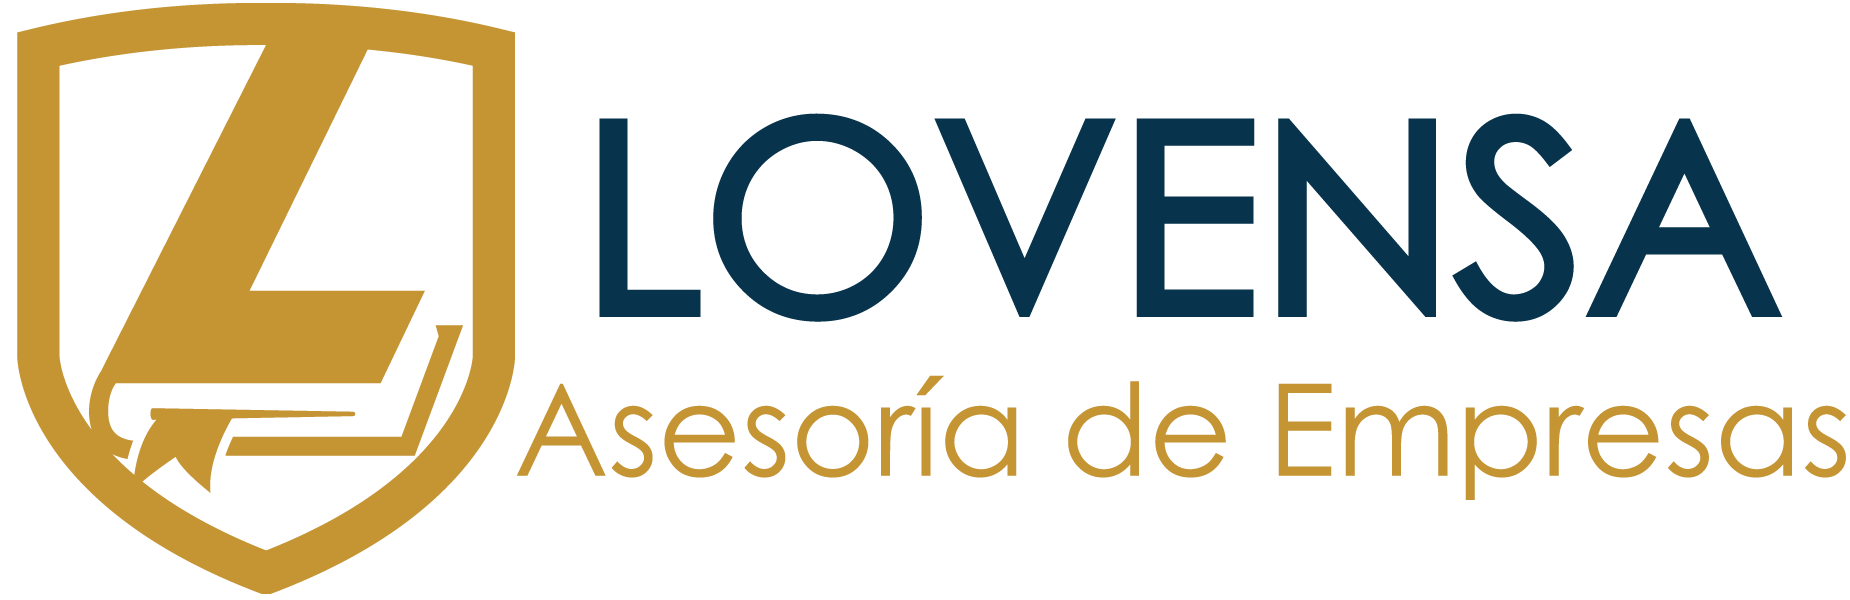 Lovensa - Asesoría de Empresas